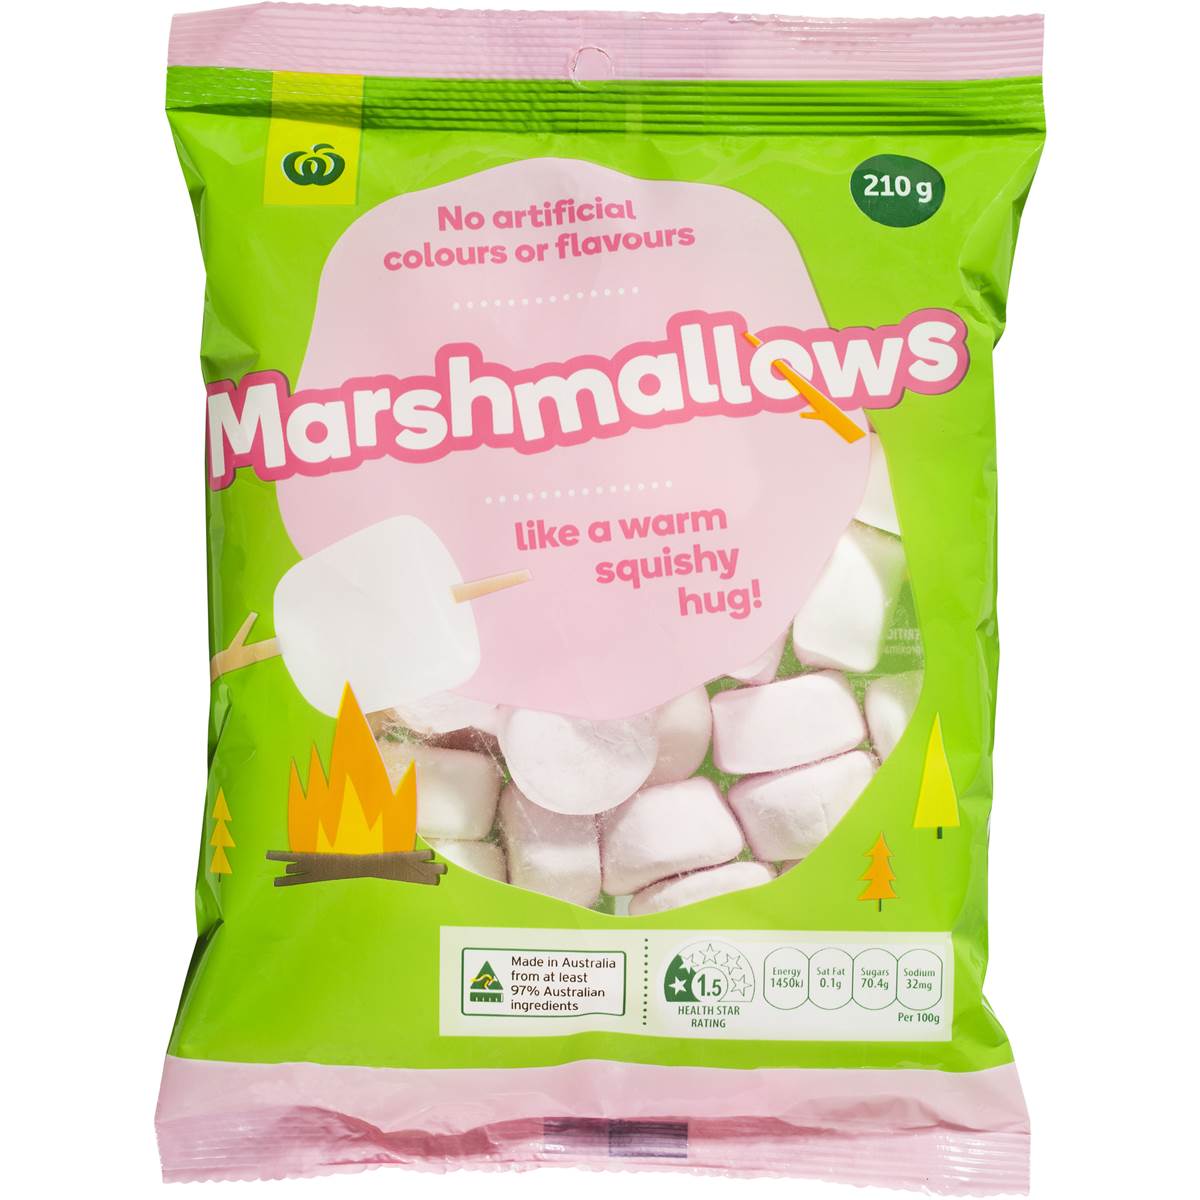 gelatin free marshmallows near me